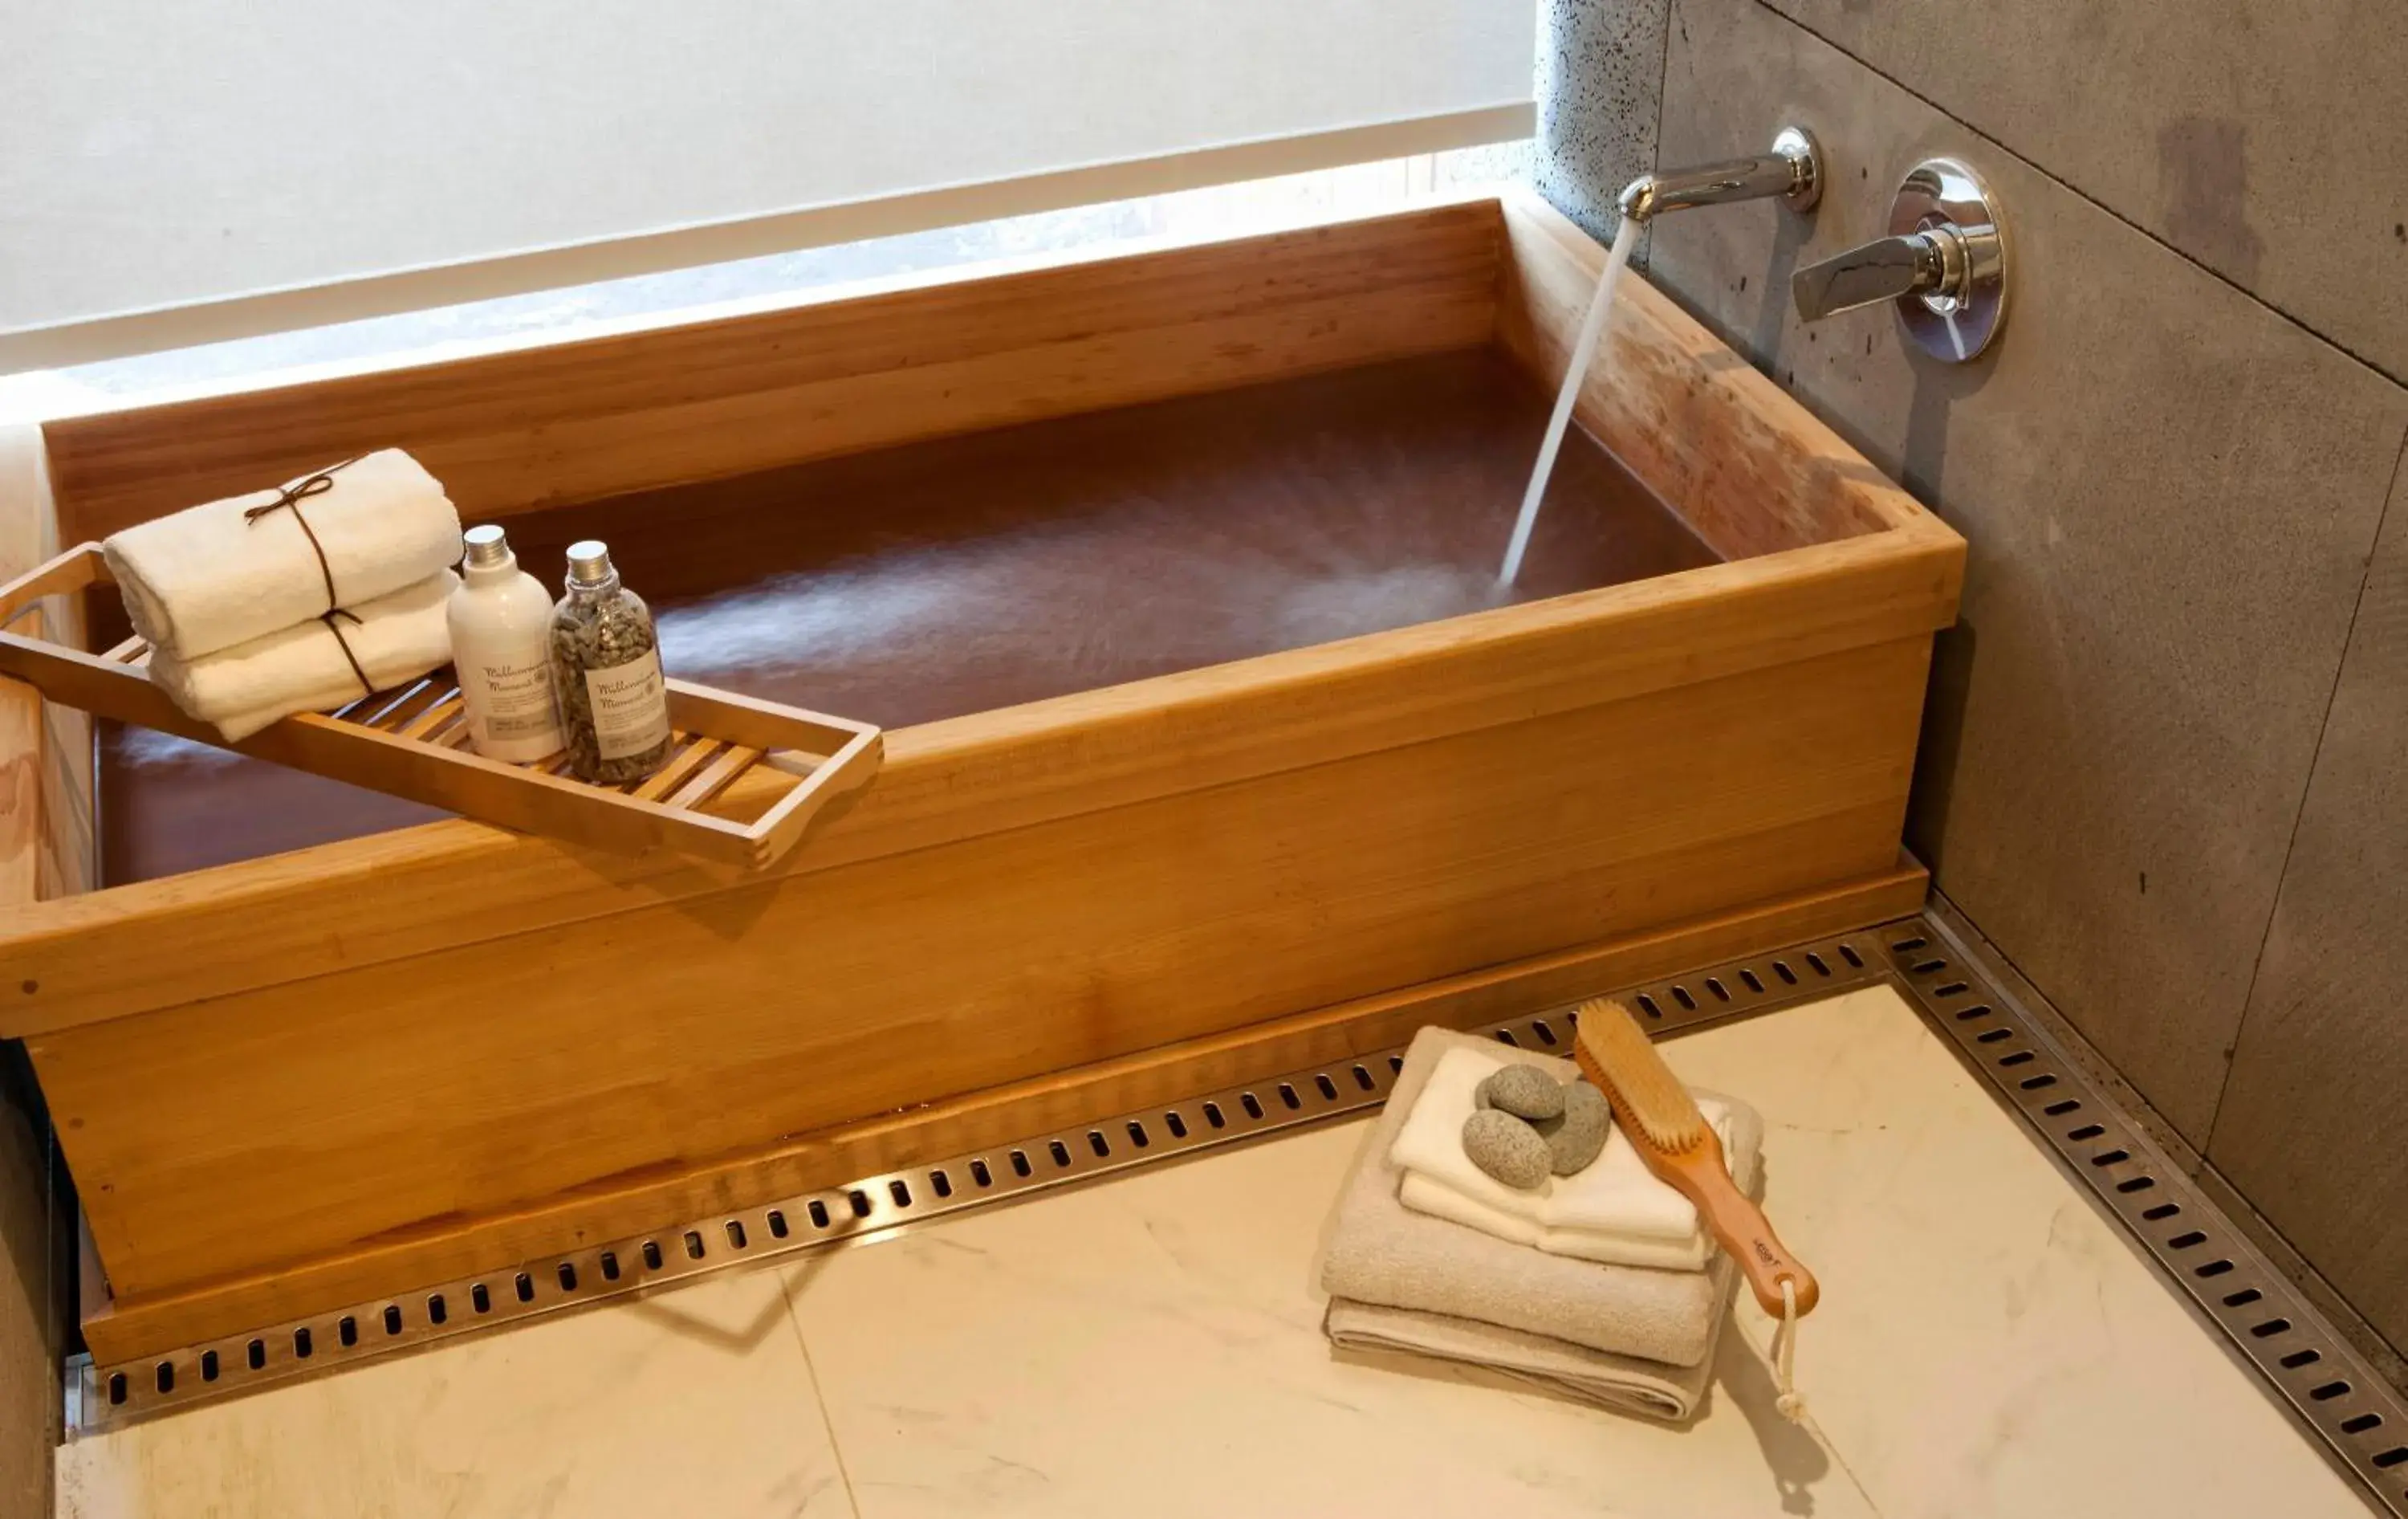 Bathroom in Lotte Resort Jeju Artvillas